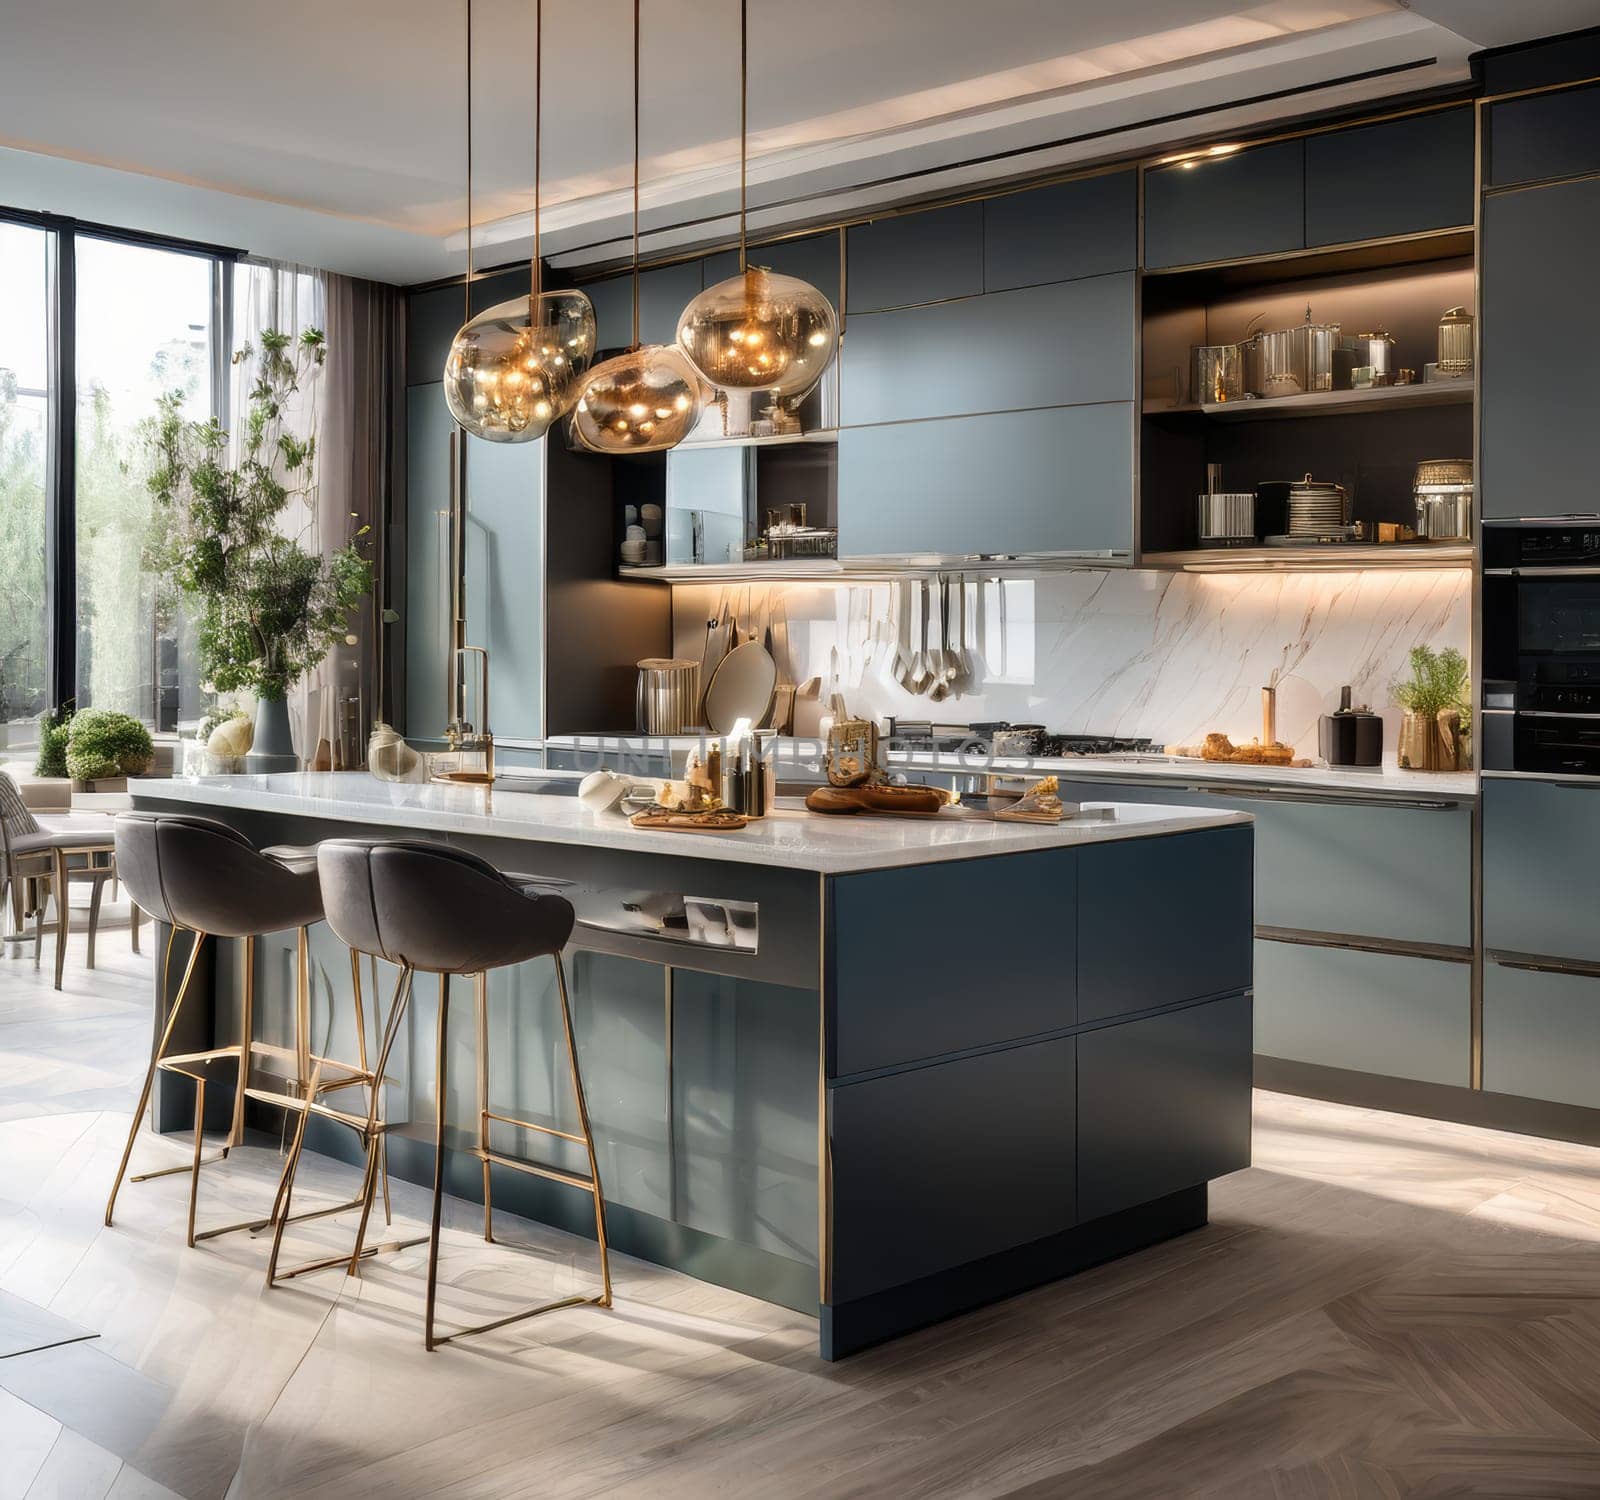 Interior design of modern luxurious kitchen by fascinadora